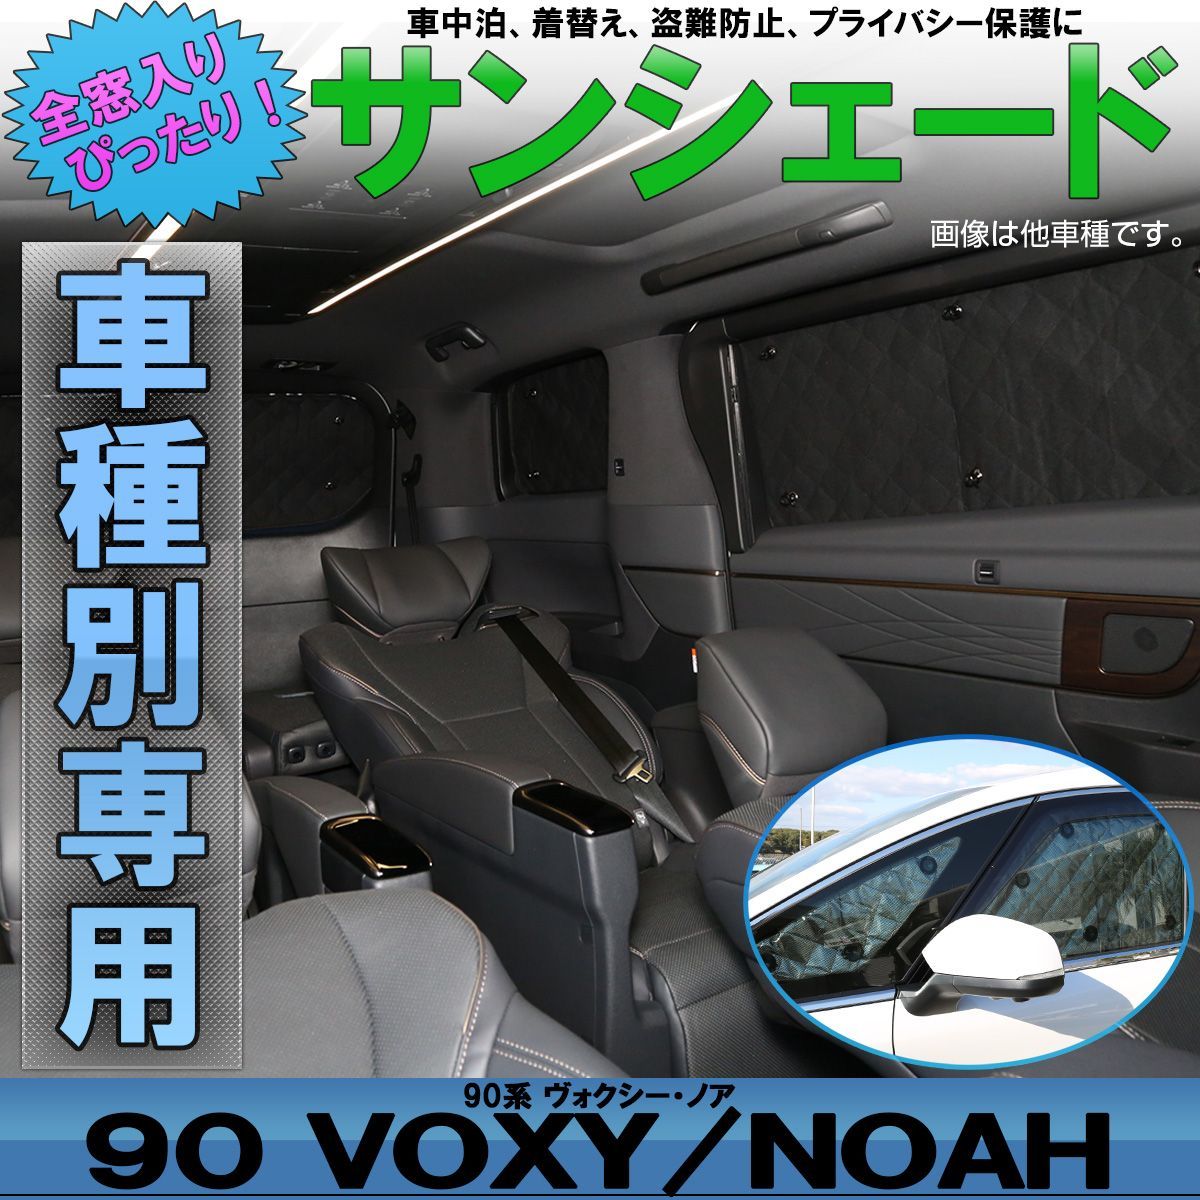 サンシェード 90系 ヴォクシー ノア 専用設計 全窓用 10枚セット 5層構造 アウトドア 車中泊 ブラックメッシュ S-836 - 内装品